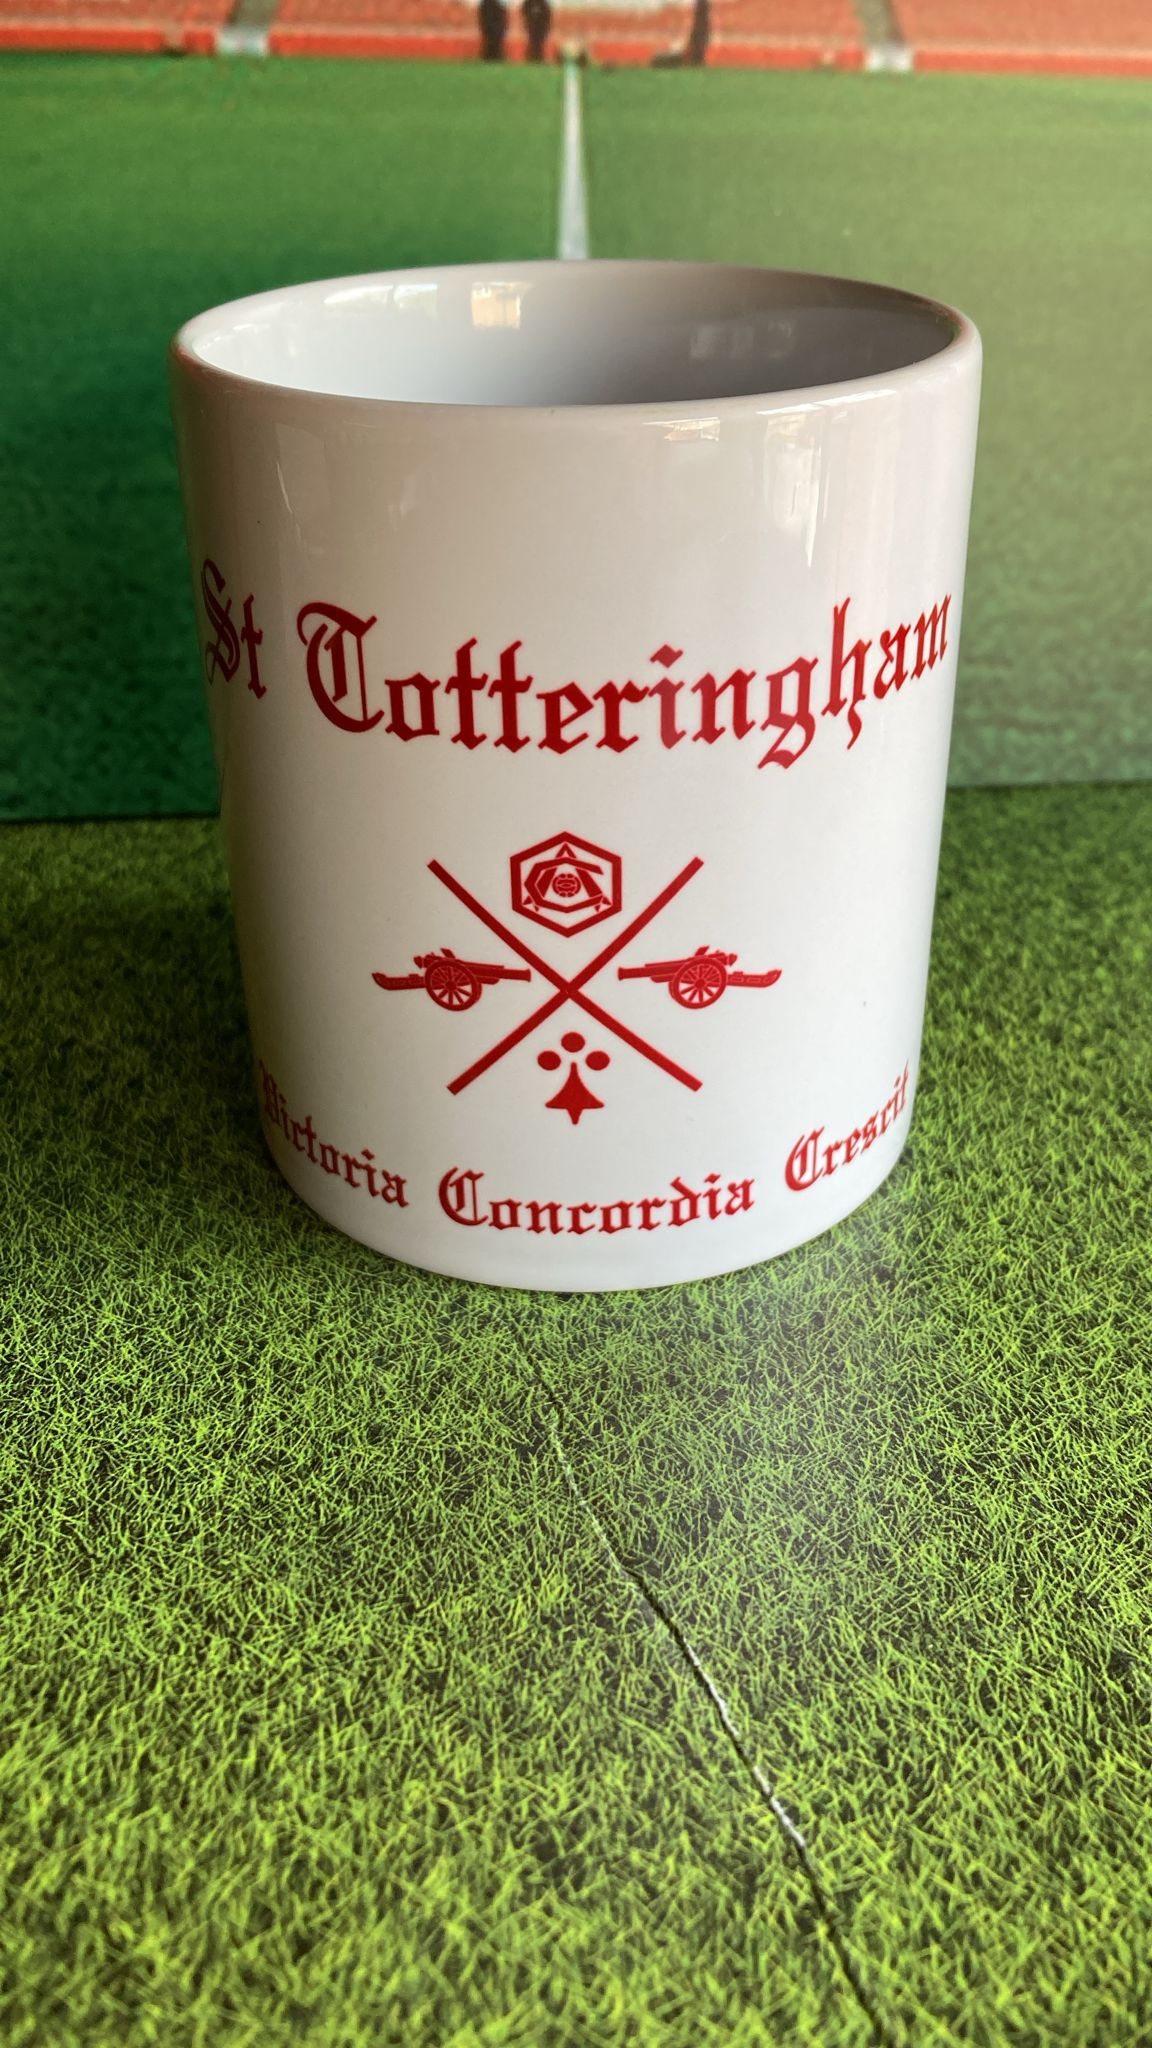 St Totteringham Mug